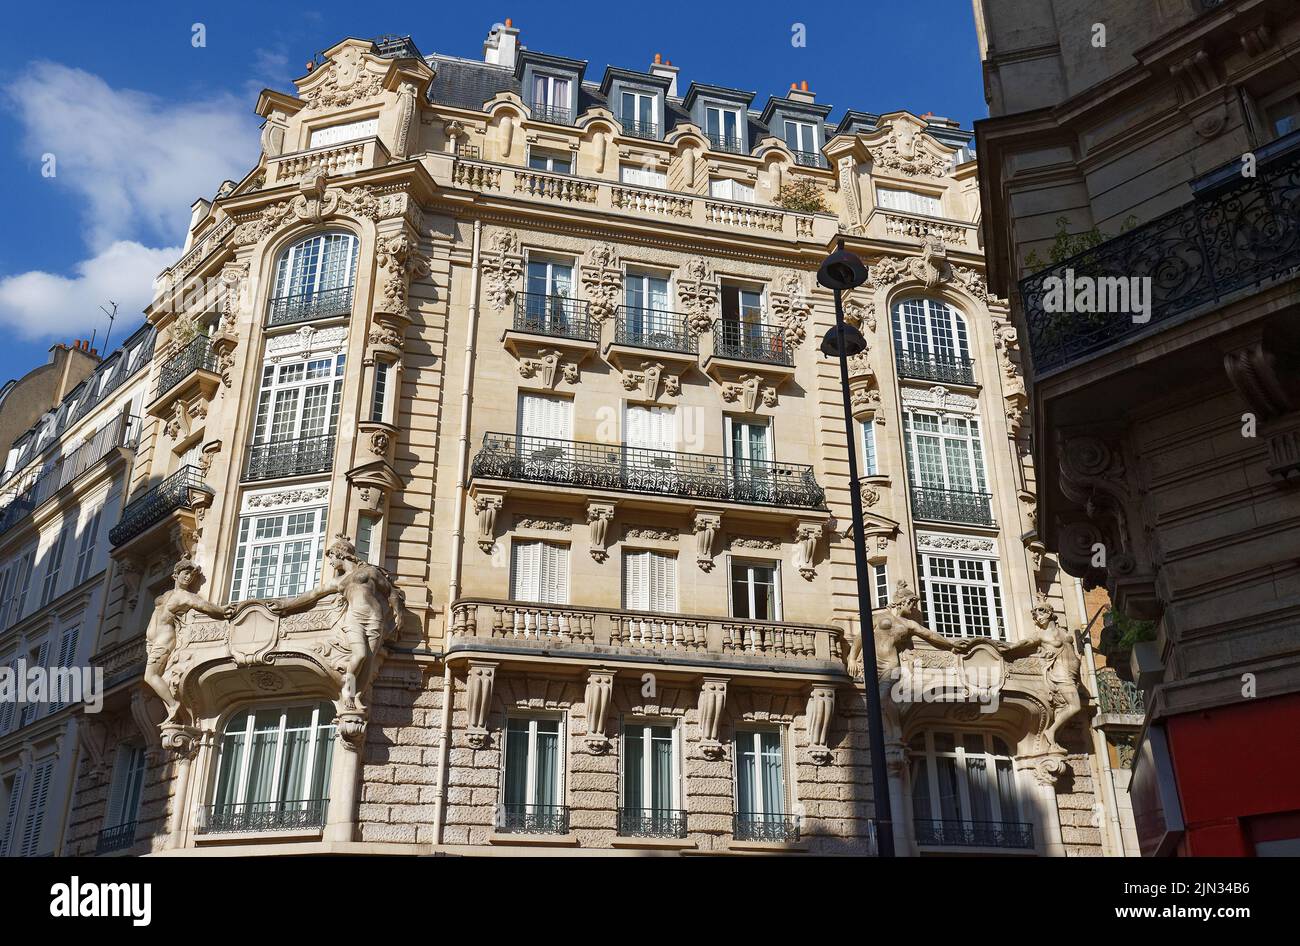 Las fachadas de las casas tradicionales francesas con balcones y ventanas típicos. París. Foto de stock